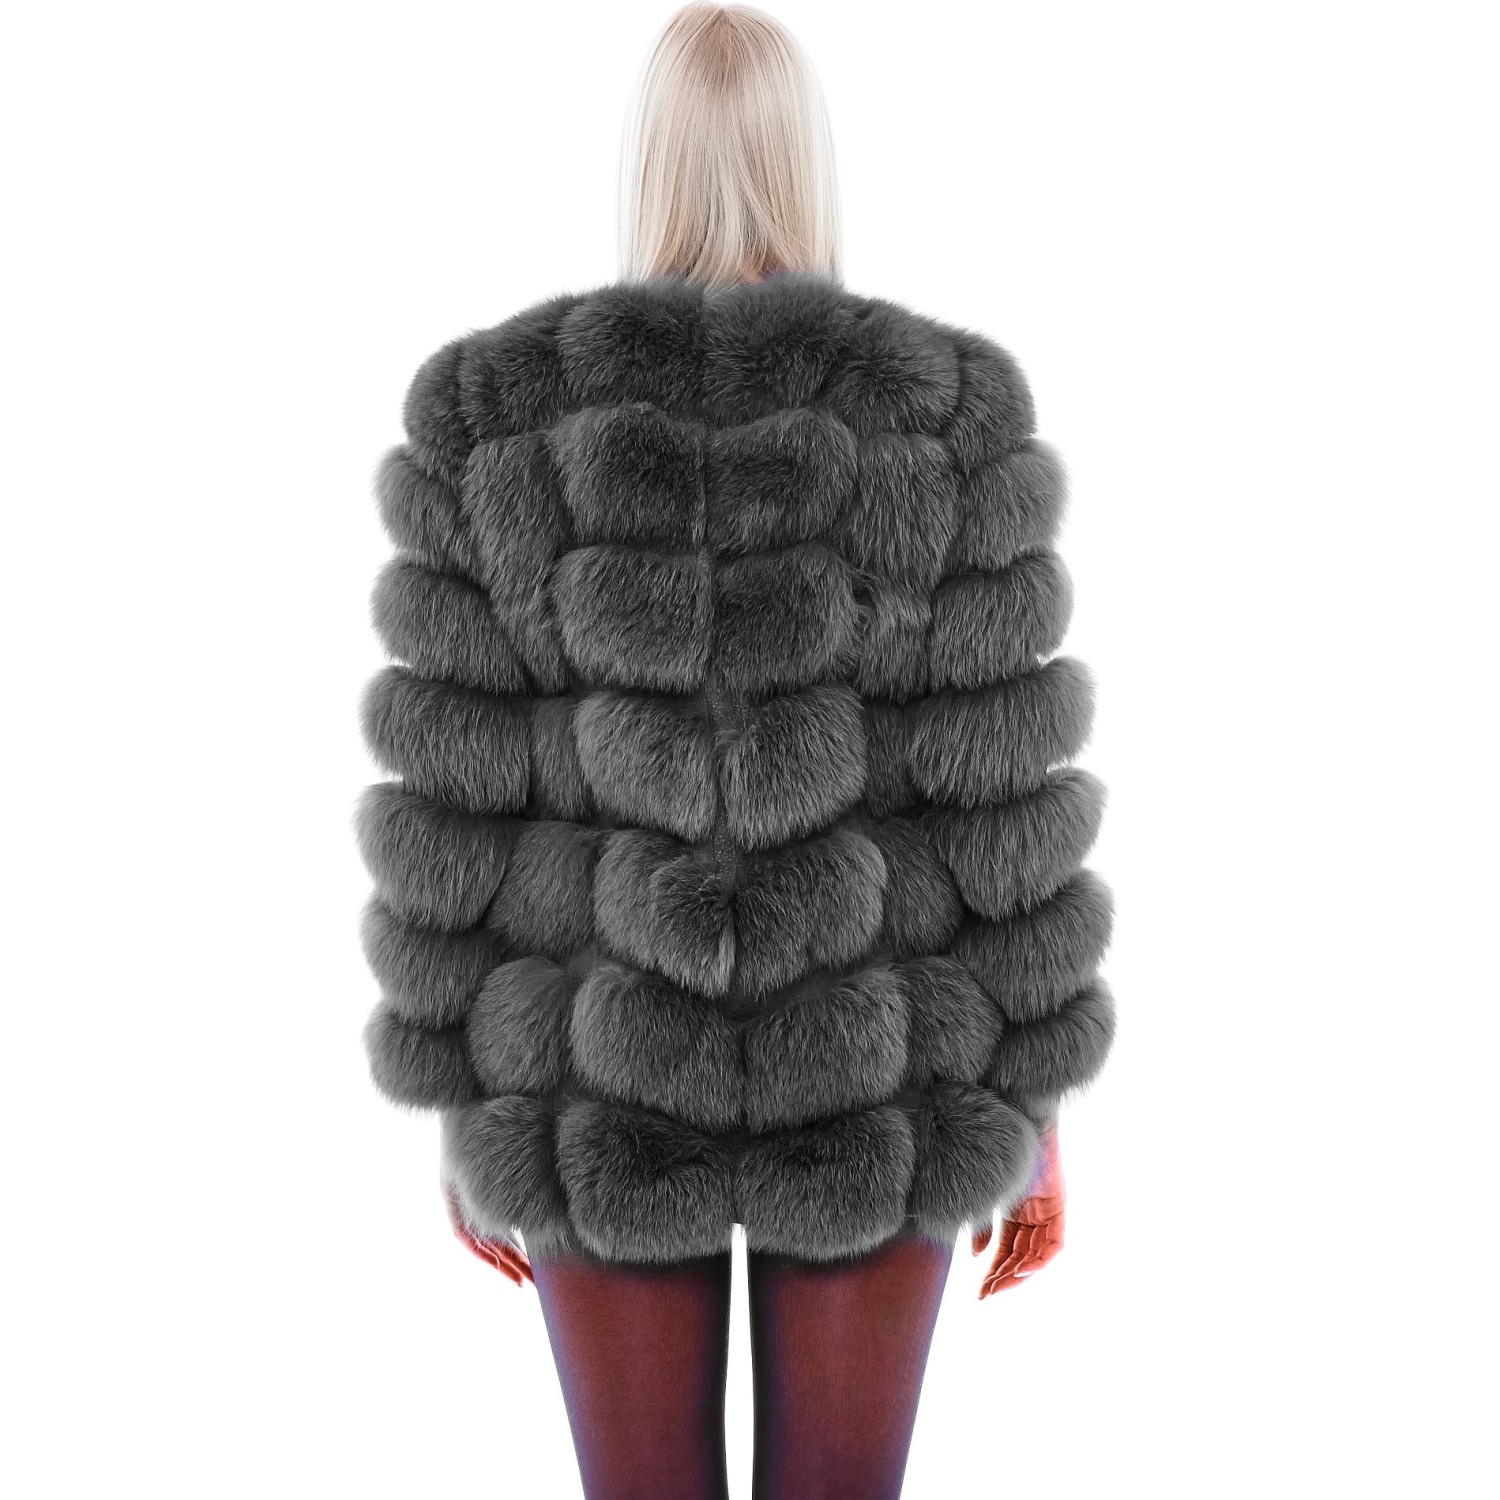 Fox Jacket Vogue in grey,  Ladiesjacket, Wintercoat, Furjacket, welovefurs